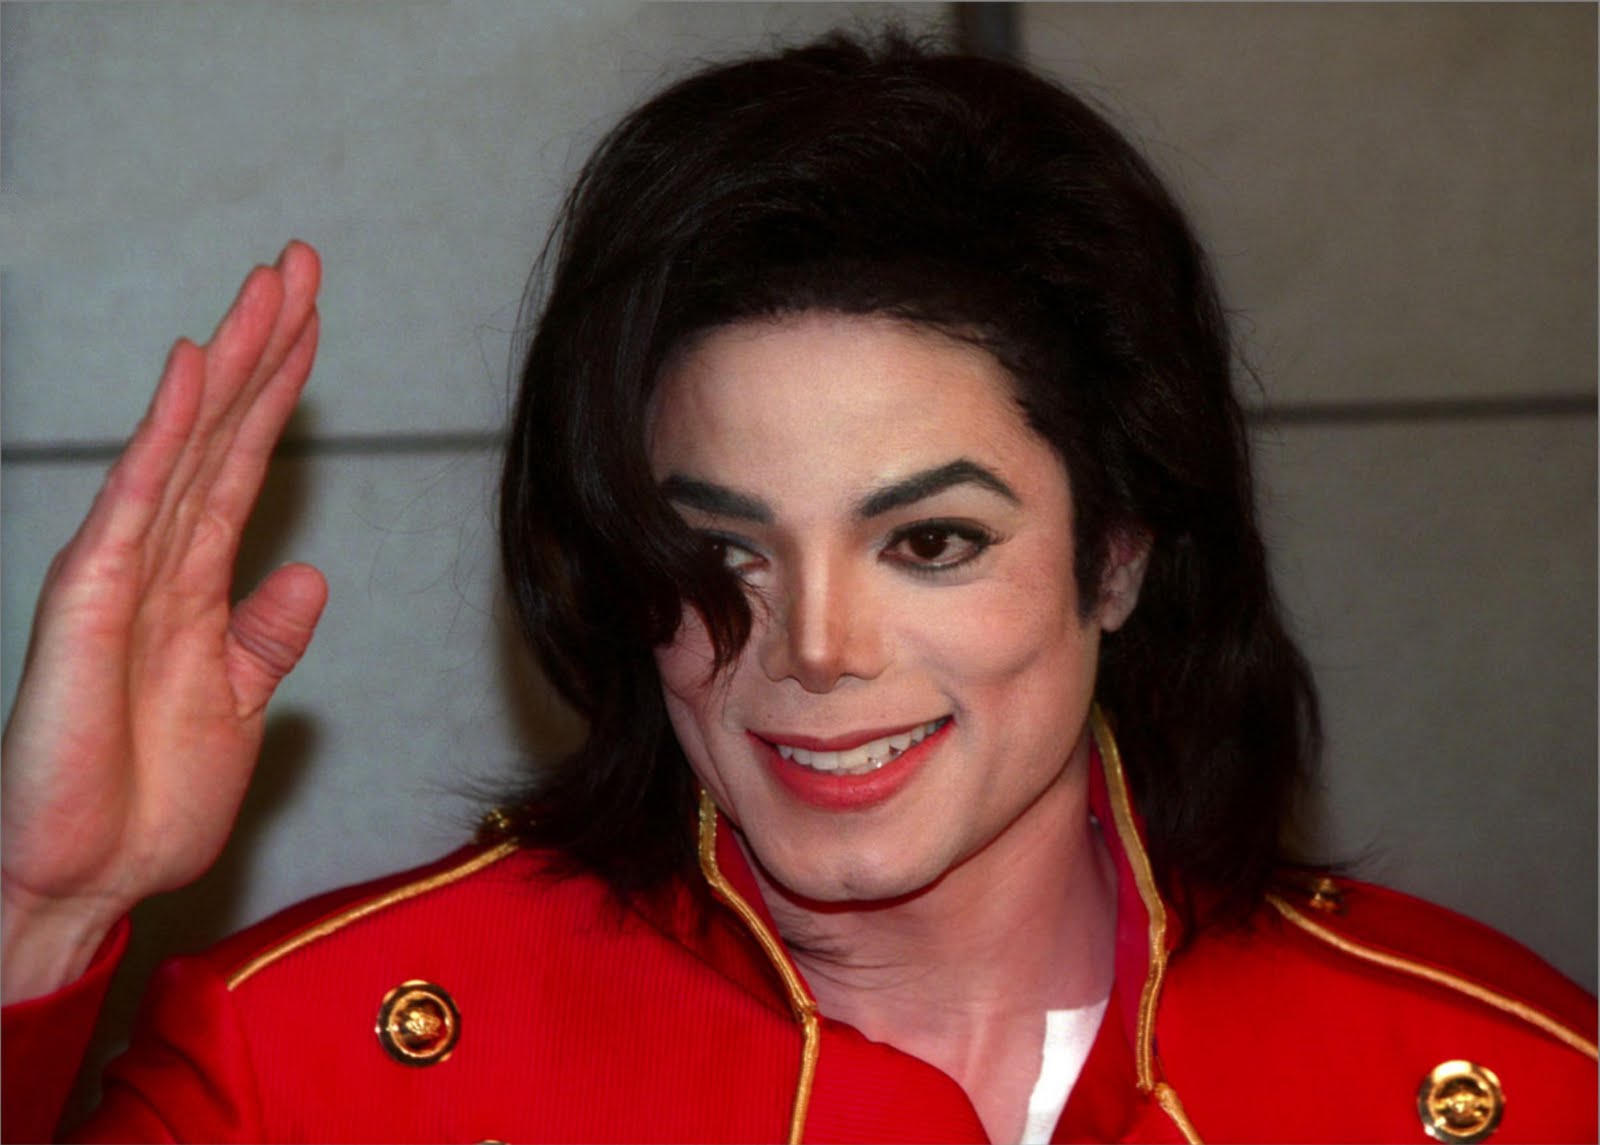 Michael Jackson de nouveau accusé de pédophilie dans un documentaire !